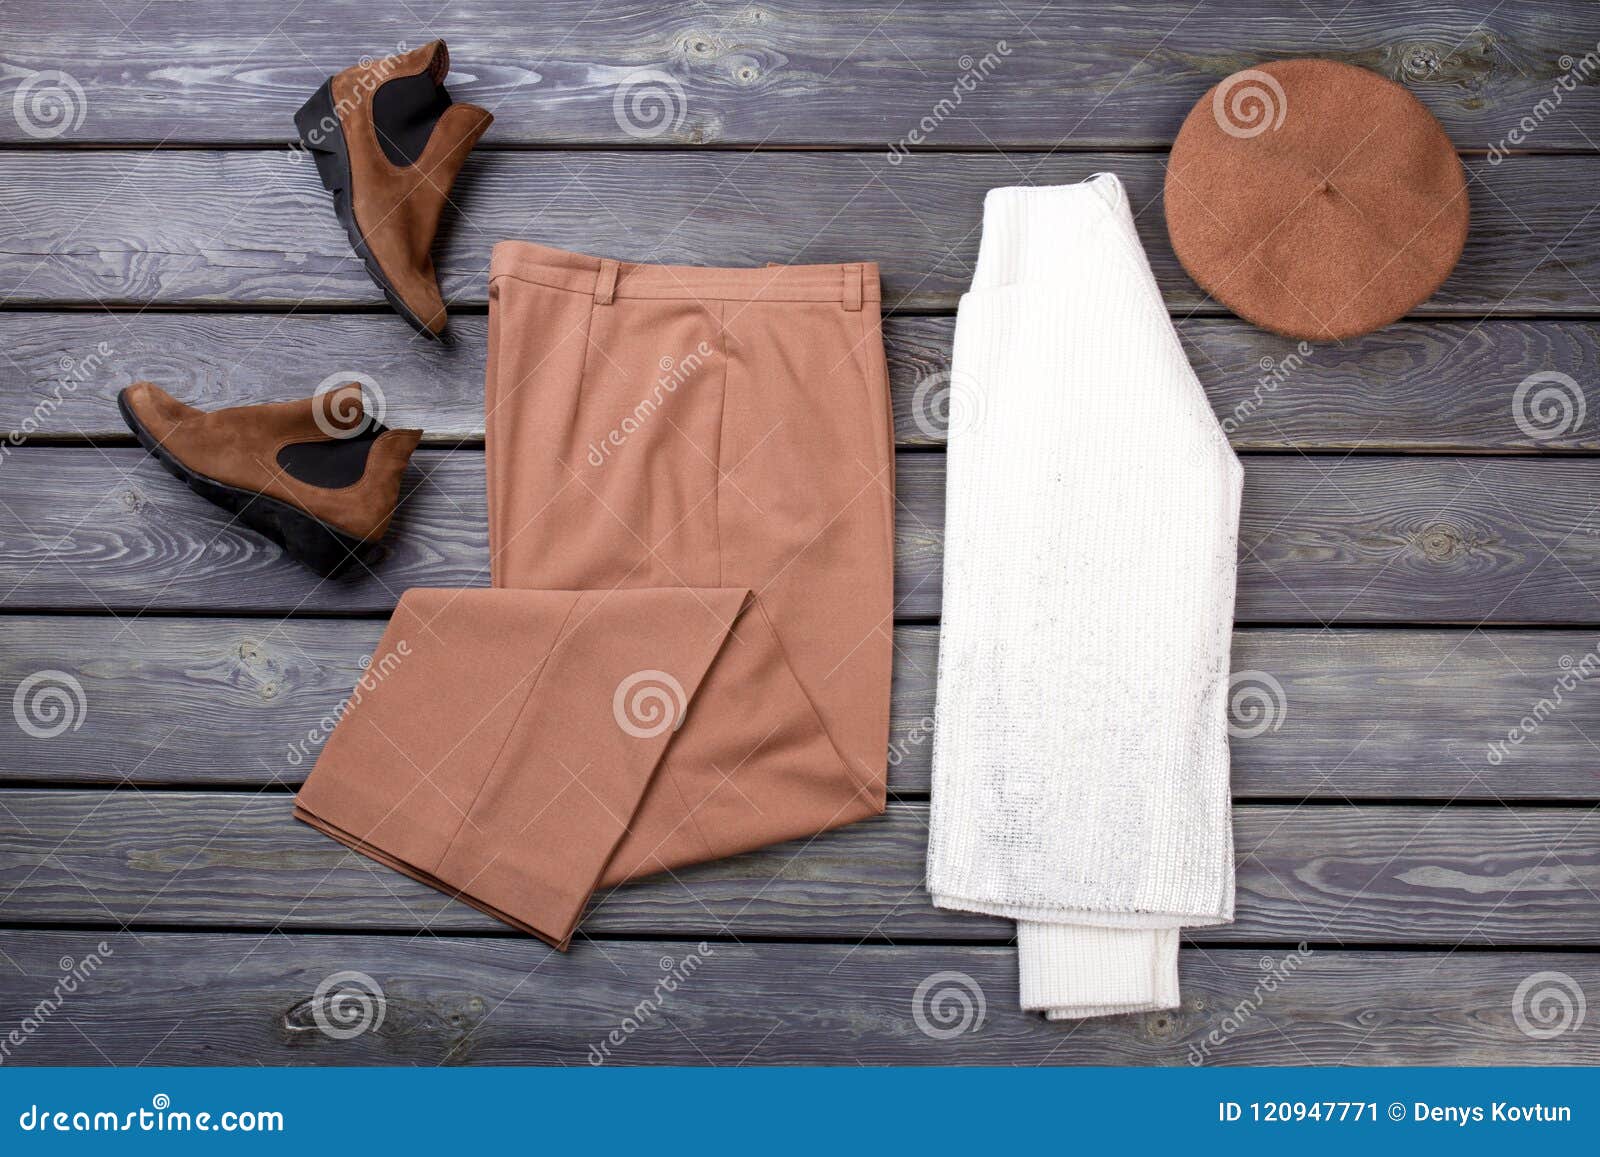 Flat Lay Warm Clothing Arrangement. Stock Image - Image of clothing ...